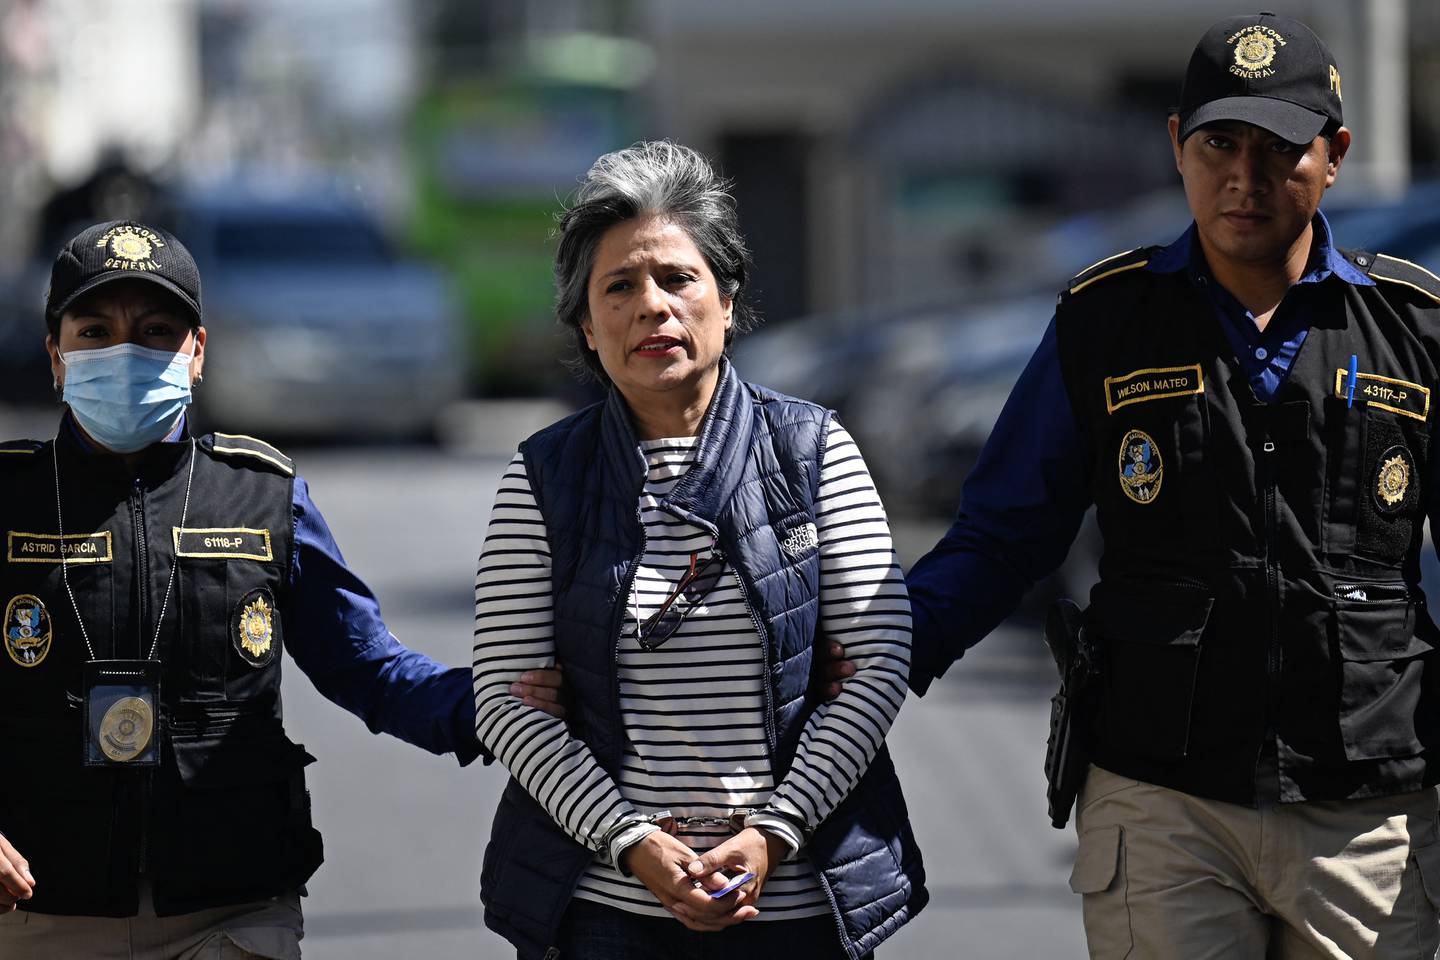 La ex abogada guatemalteca de la Comisión Internacional contra la Impunidad en Guatemala (CICIG), Claudia González (C), llega esposada a una audiencia en el Palacio de Justicia luego de ser arrestada en su casa en la Ciudad de Guatemala.